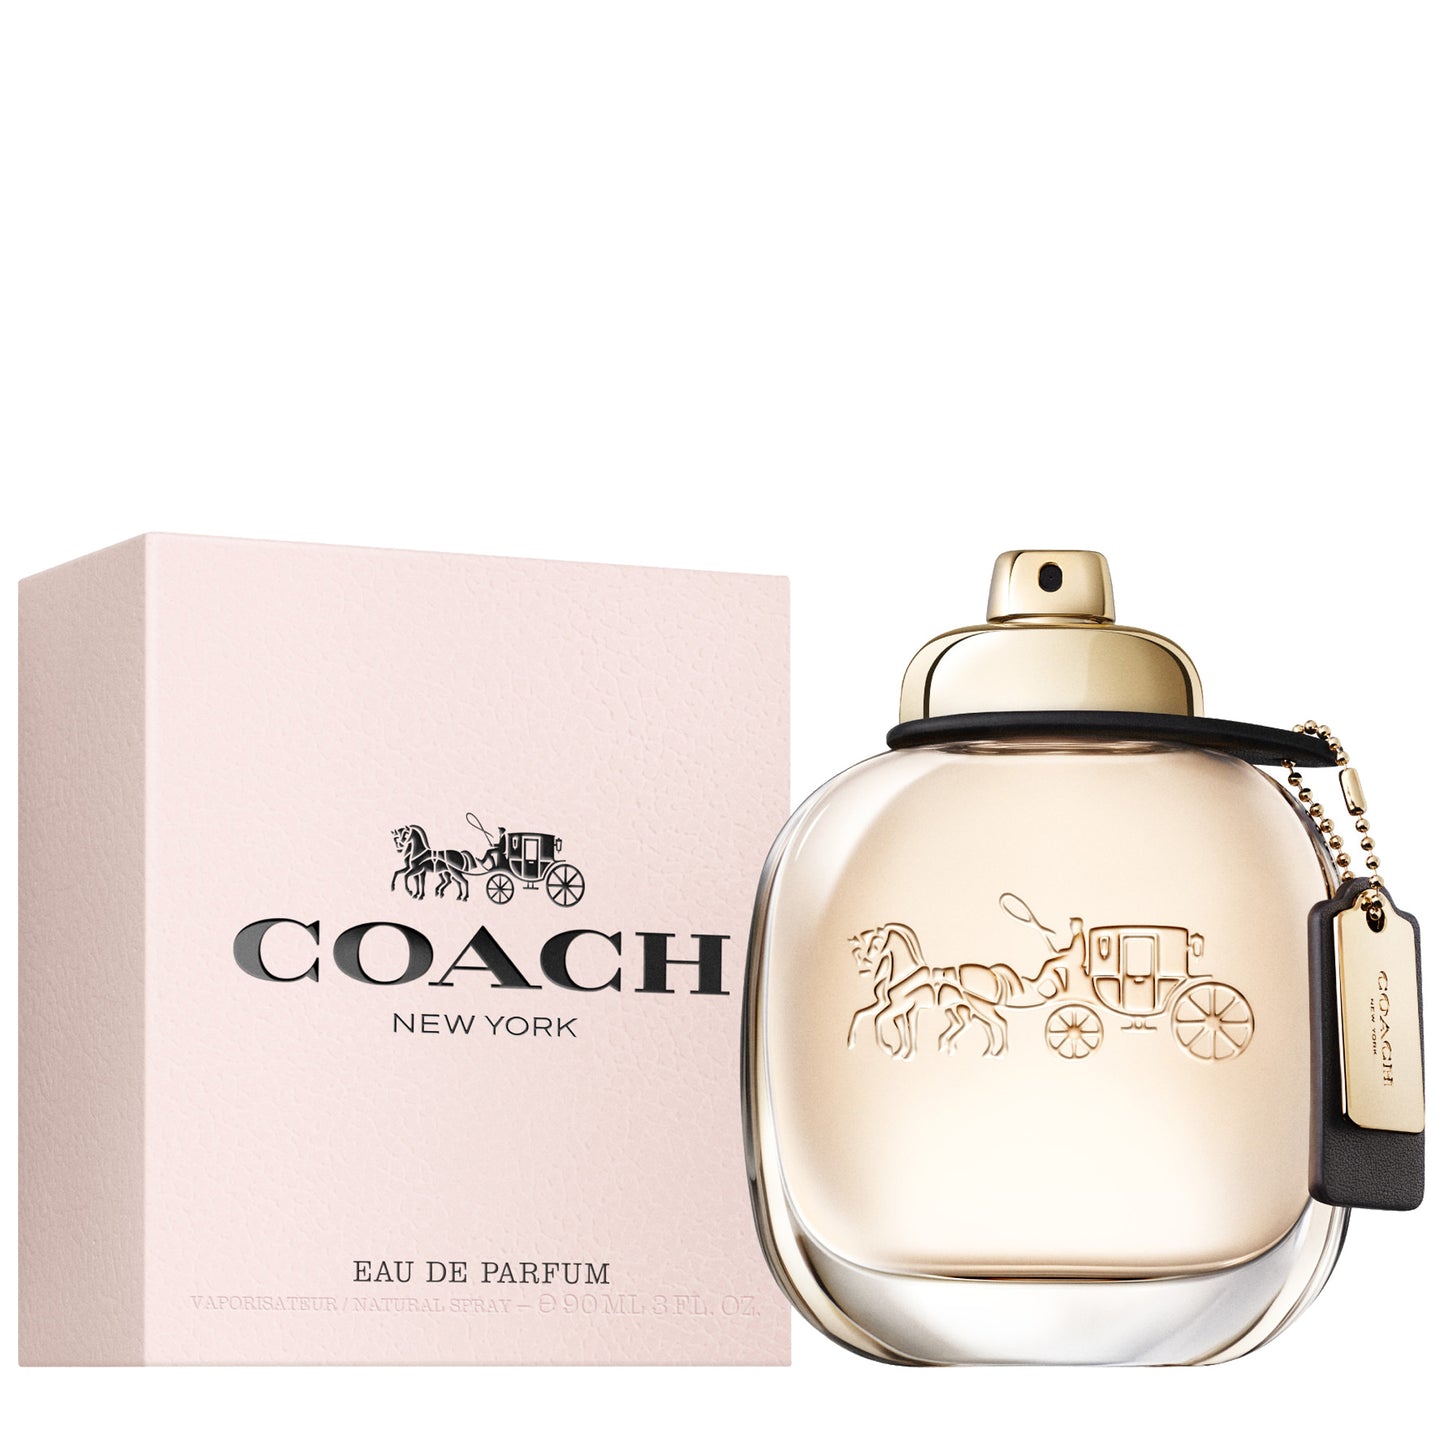 Coach Original Eau de Parfum